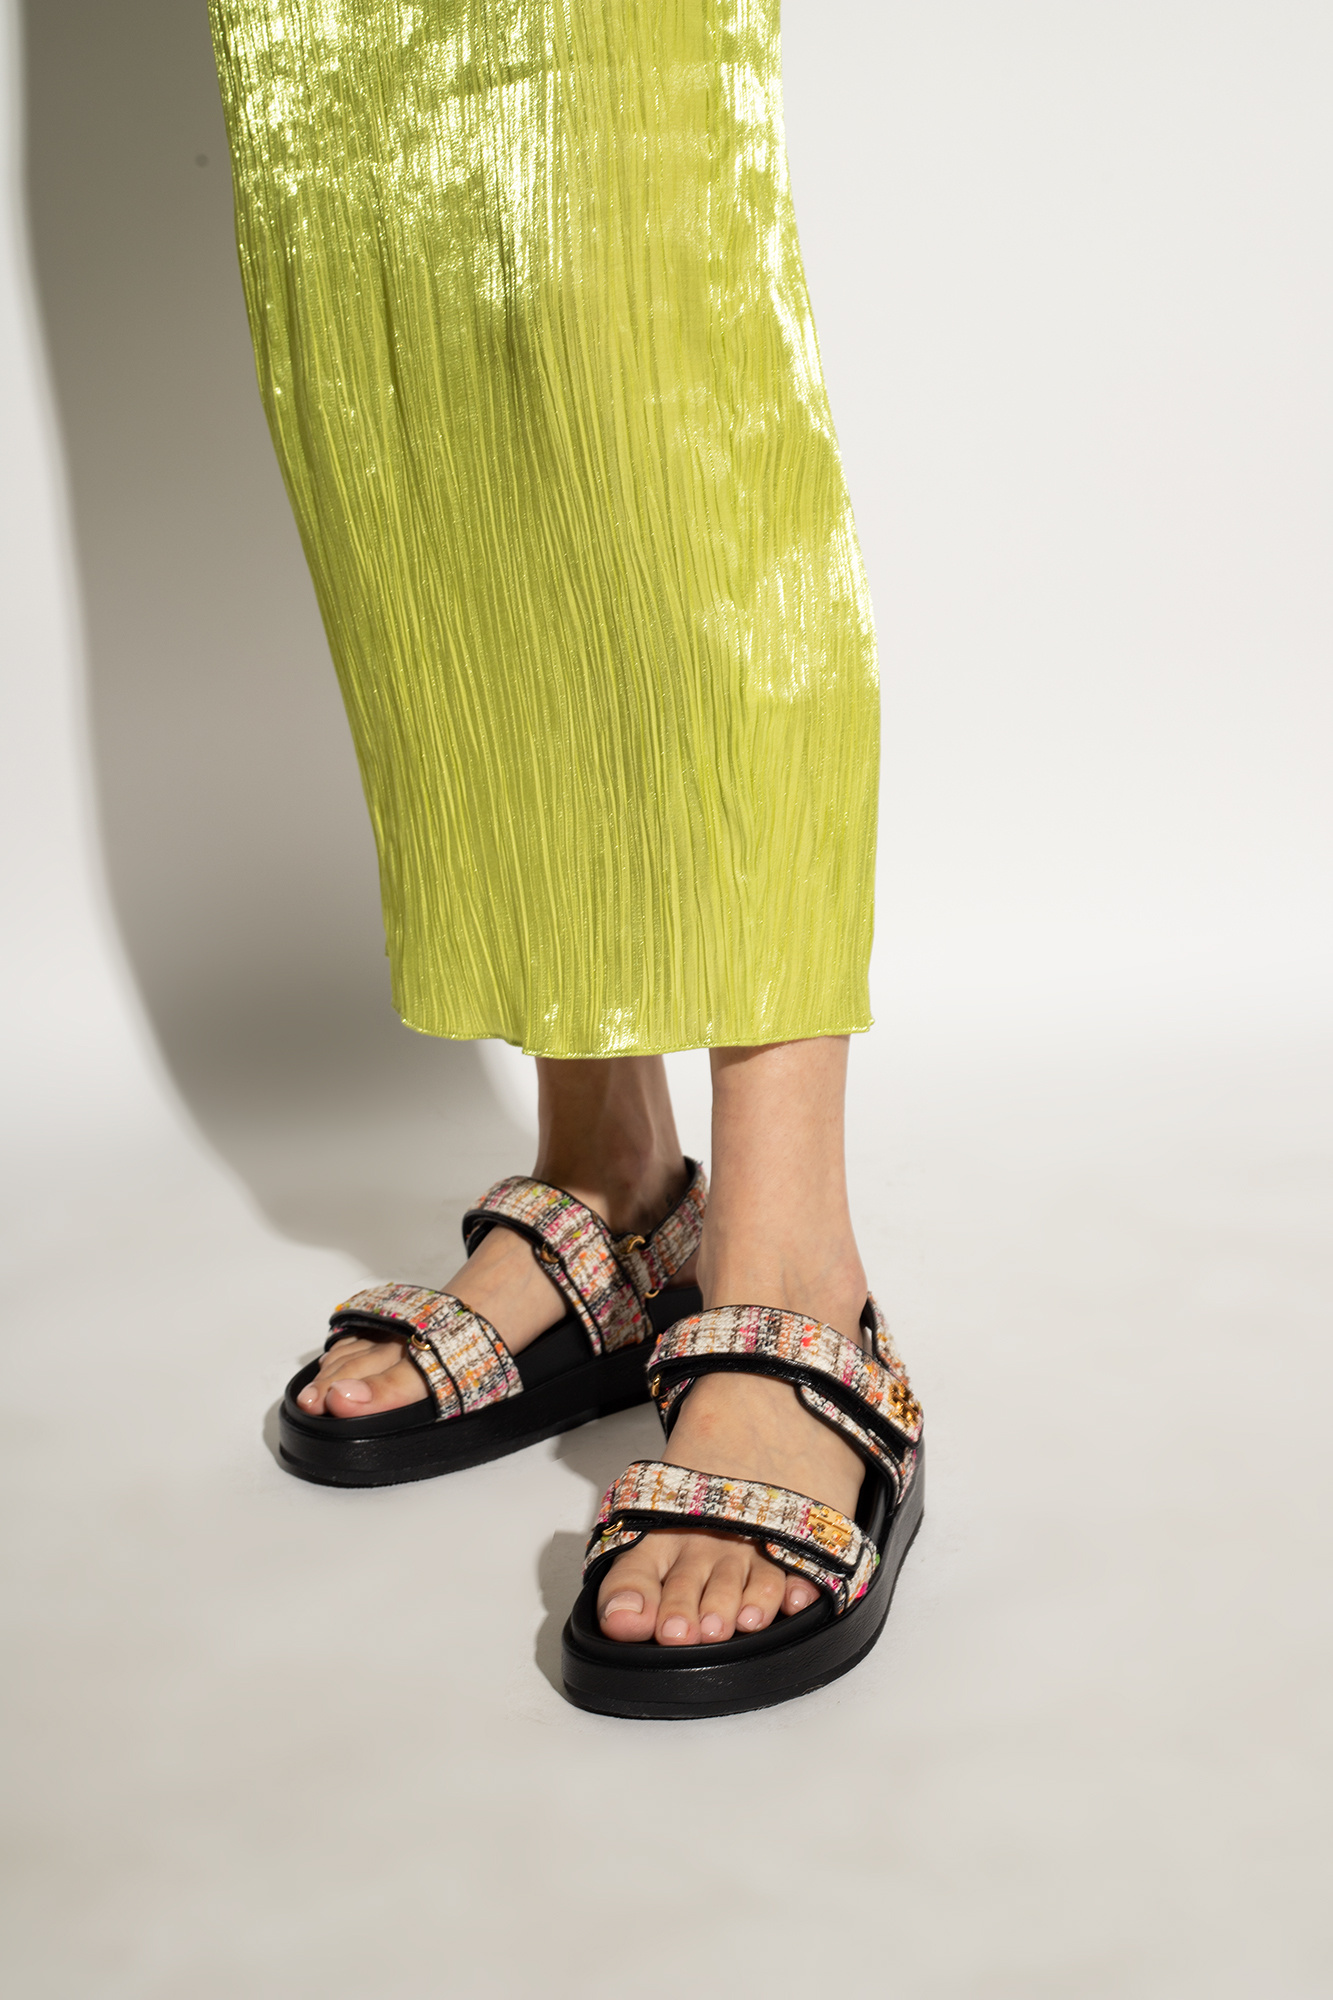 Kira Sport Sandal: Women's Designer Sandals